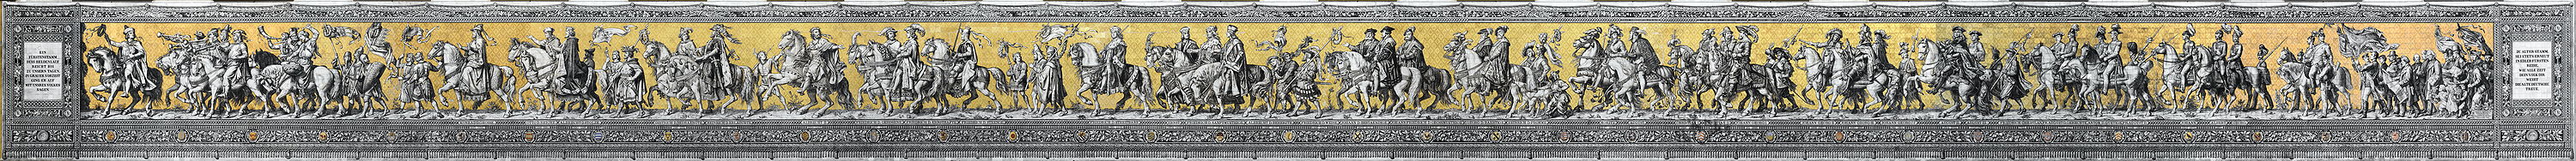 Panorama-Montage des Fürstenzugs, der Darstellung der tausendjährigen Geschichte des Fürstenhauses Wettin